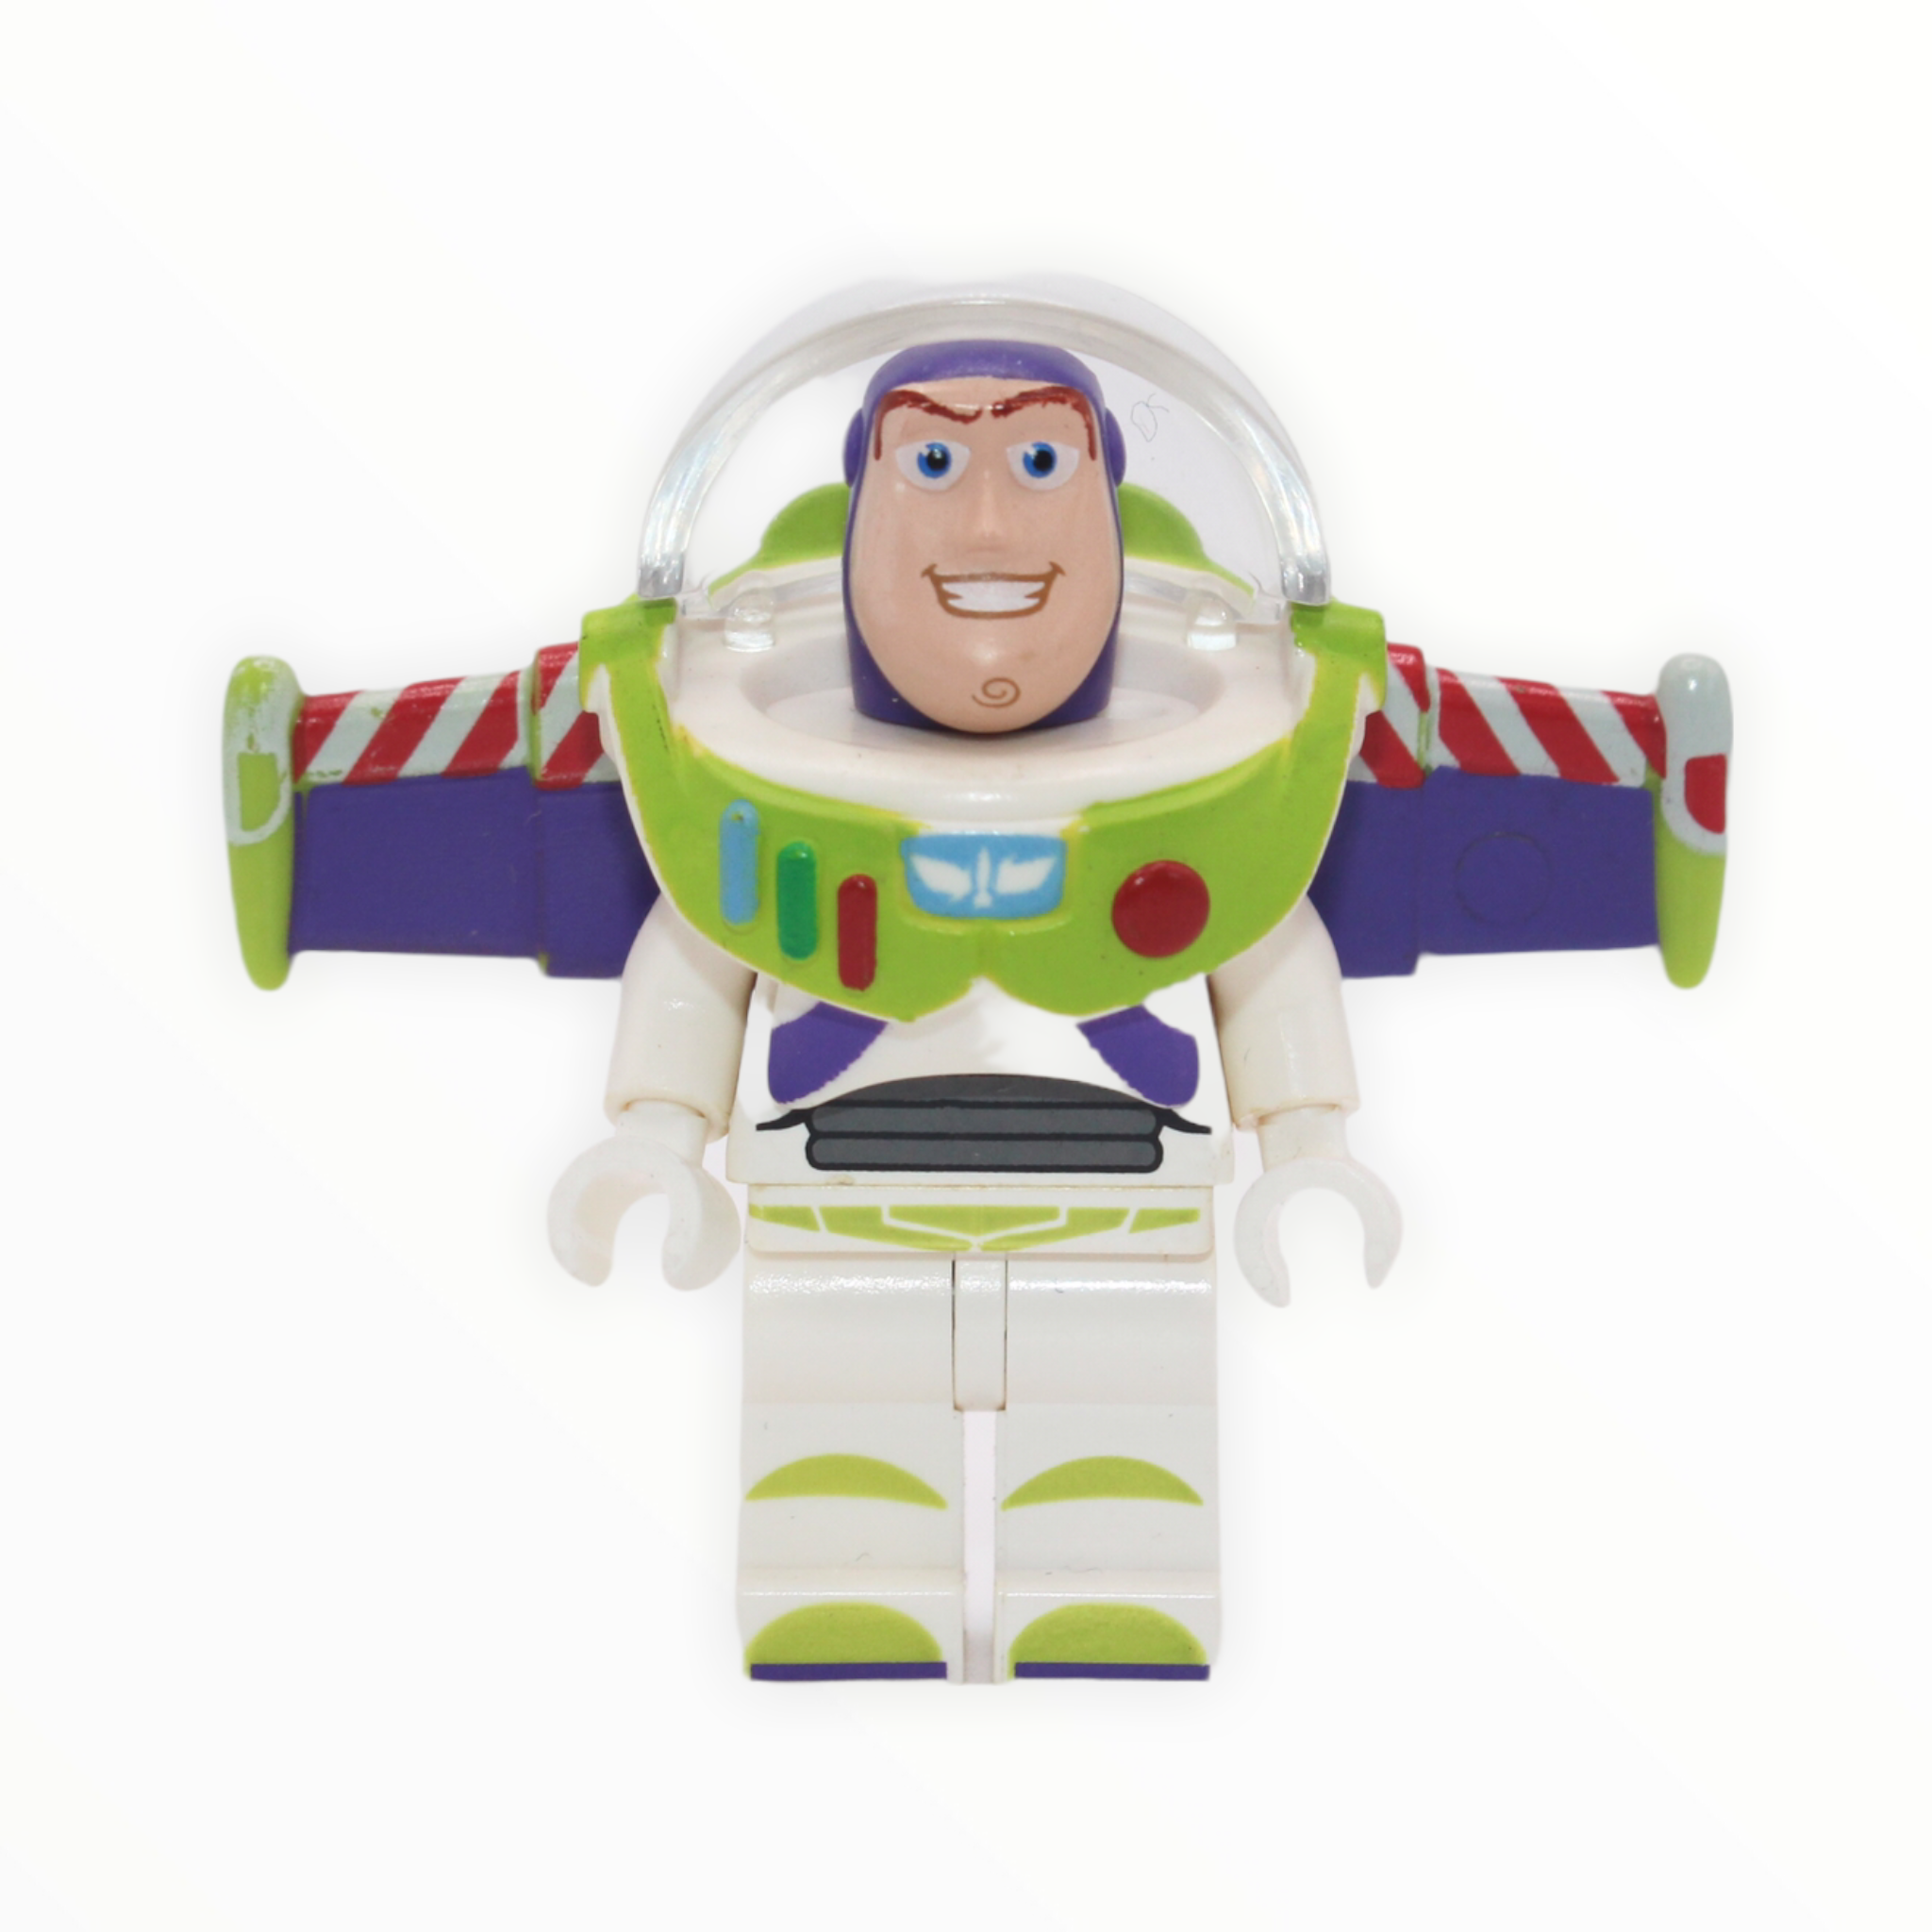 Buzz Lightyear (Toy Story, 2010)